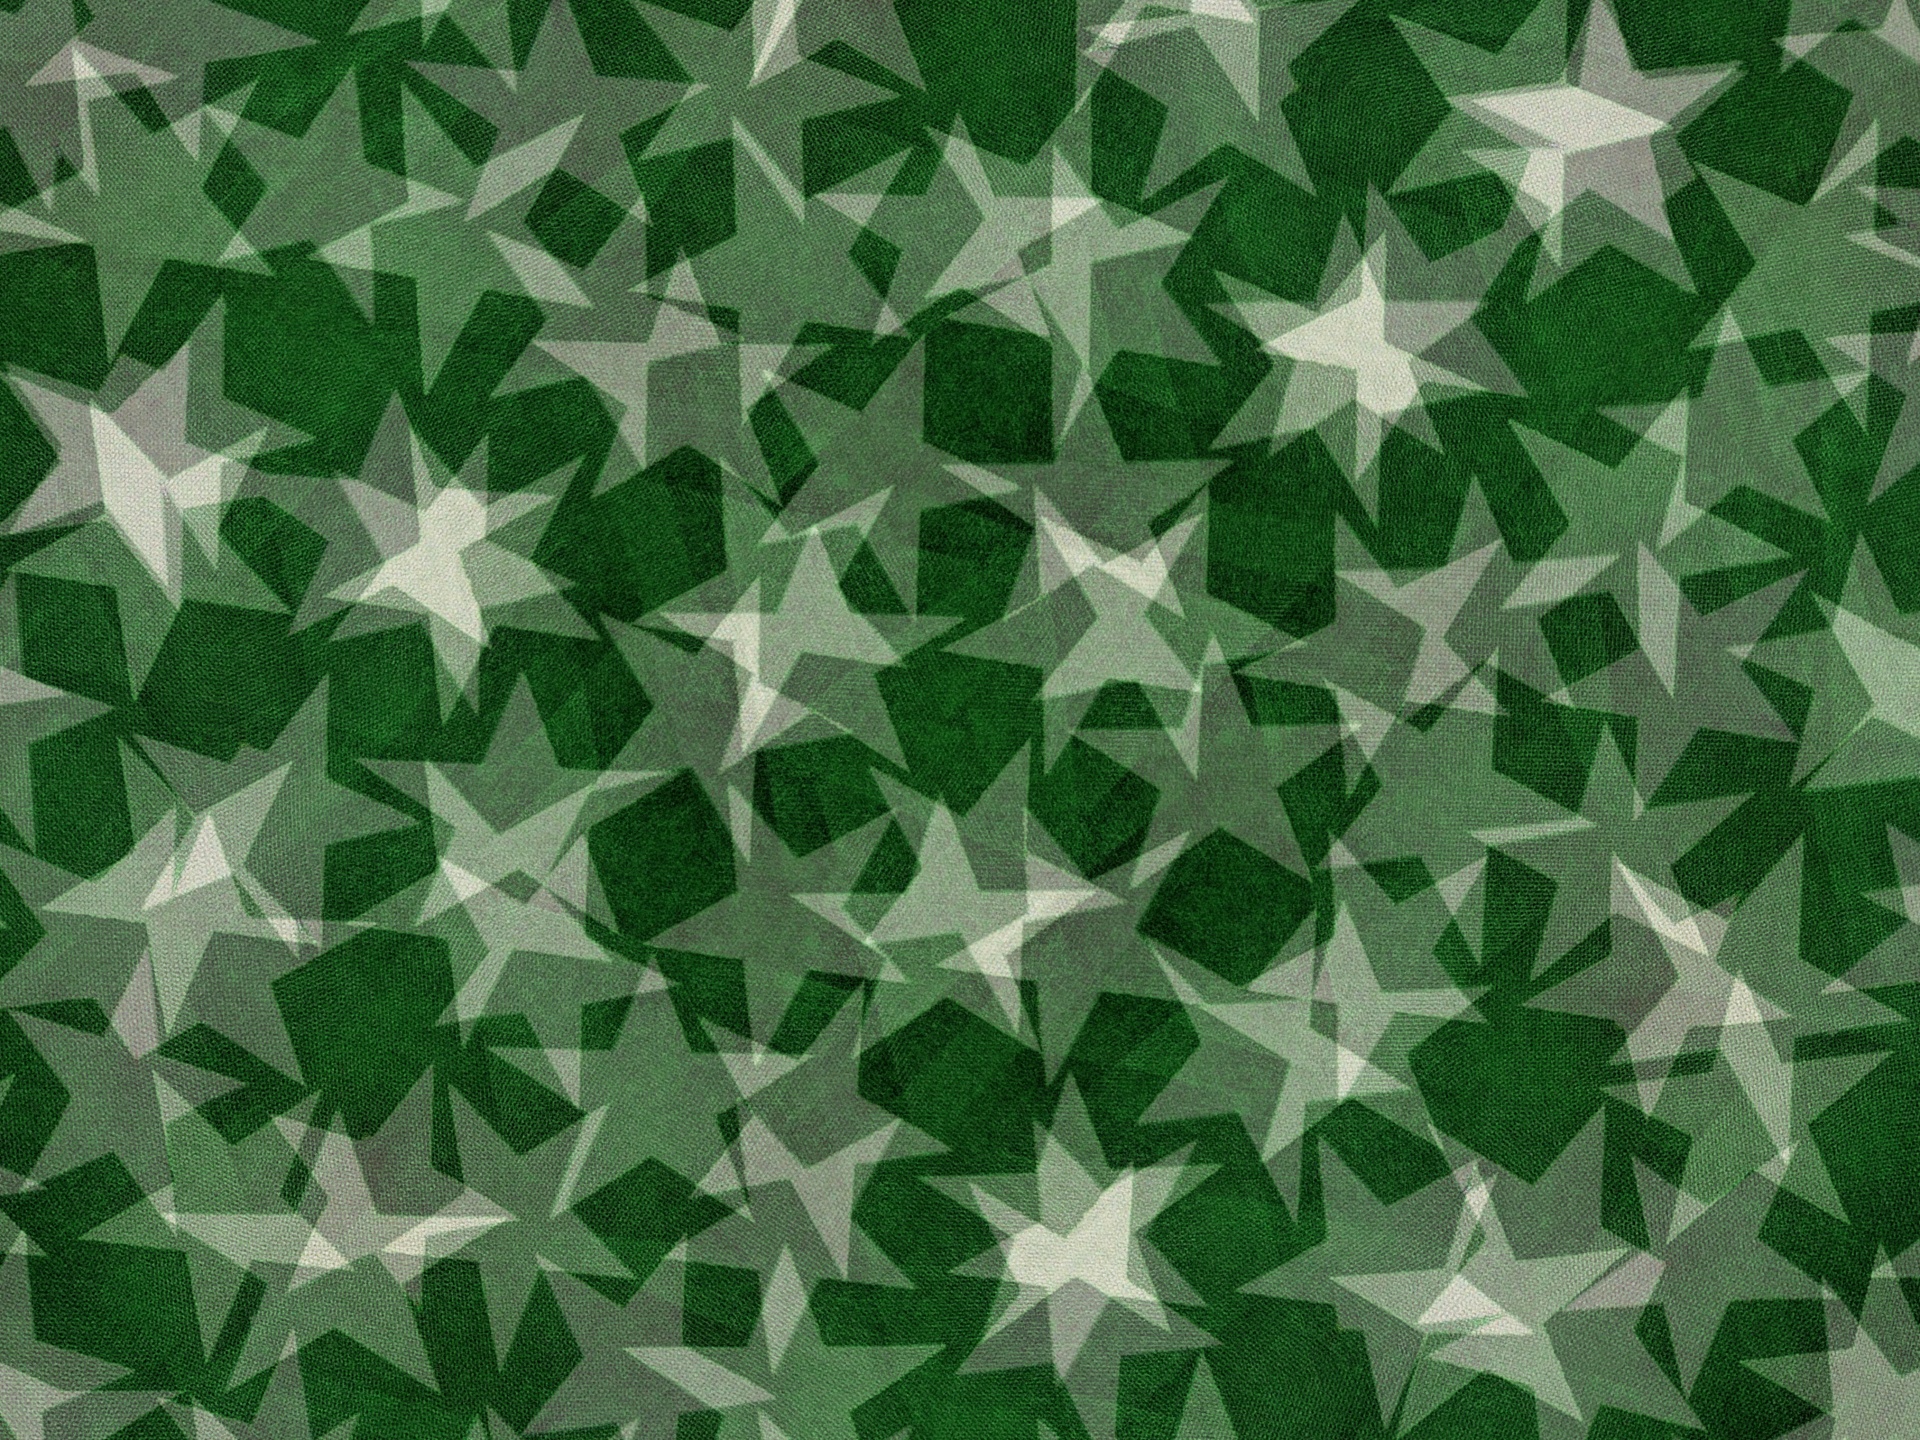 World star-7 green stars